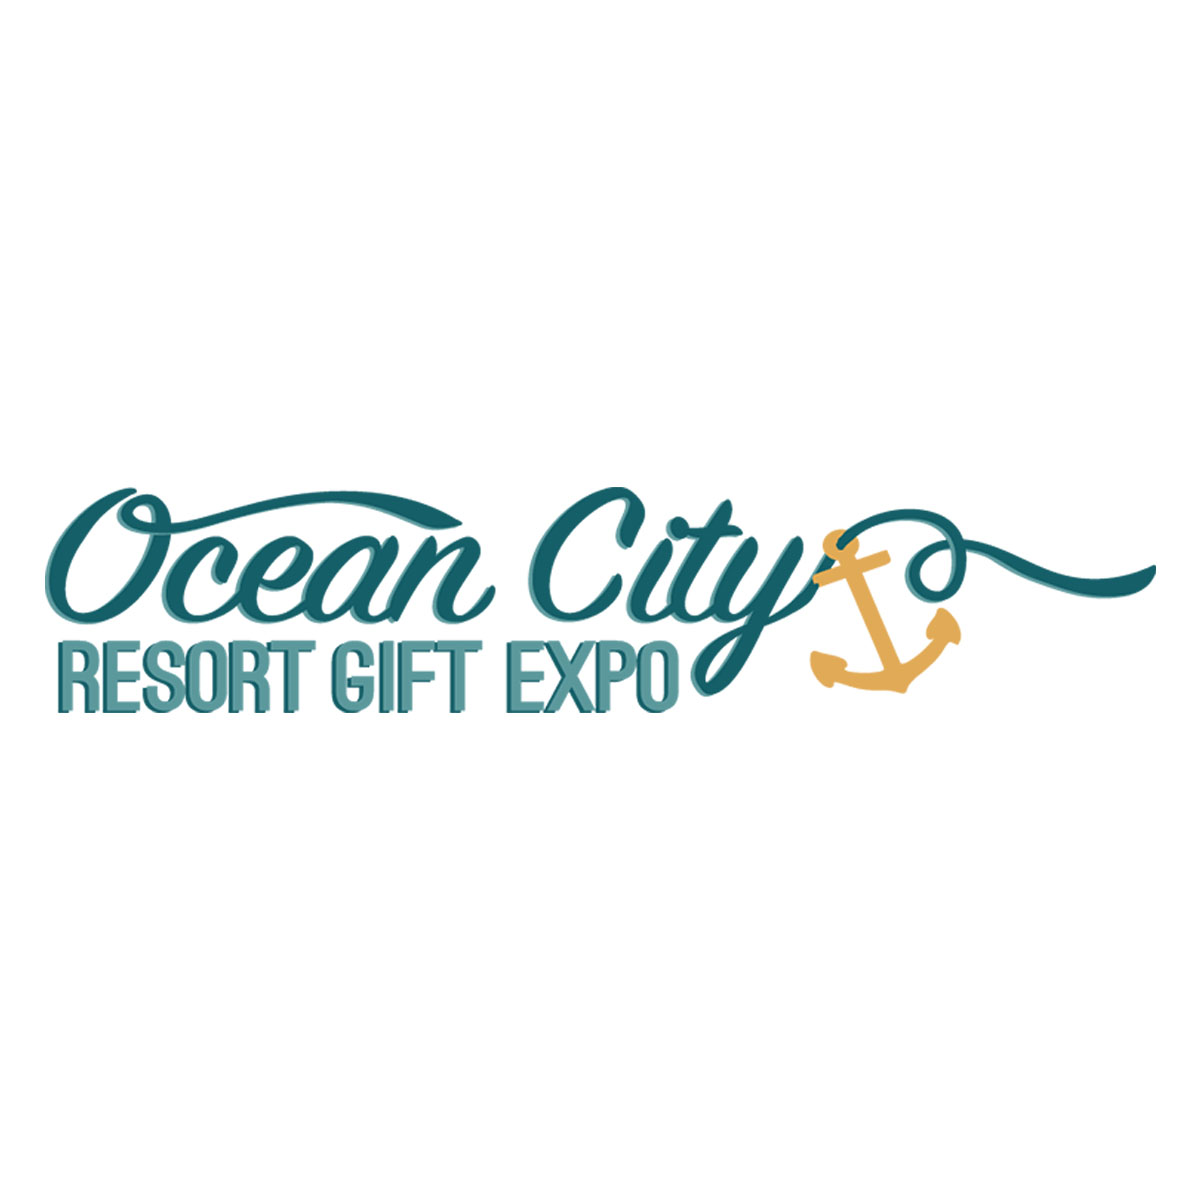 Ocean city Resort gft